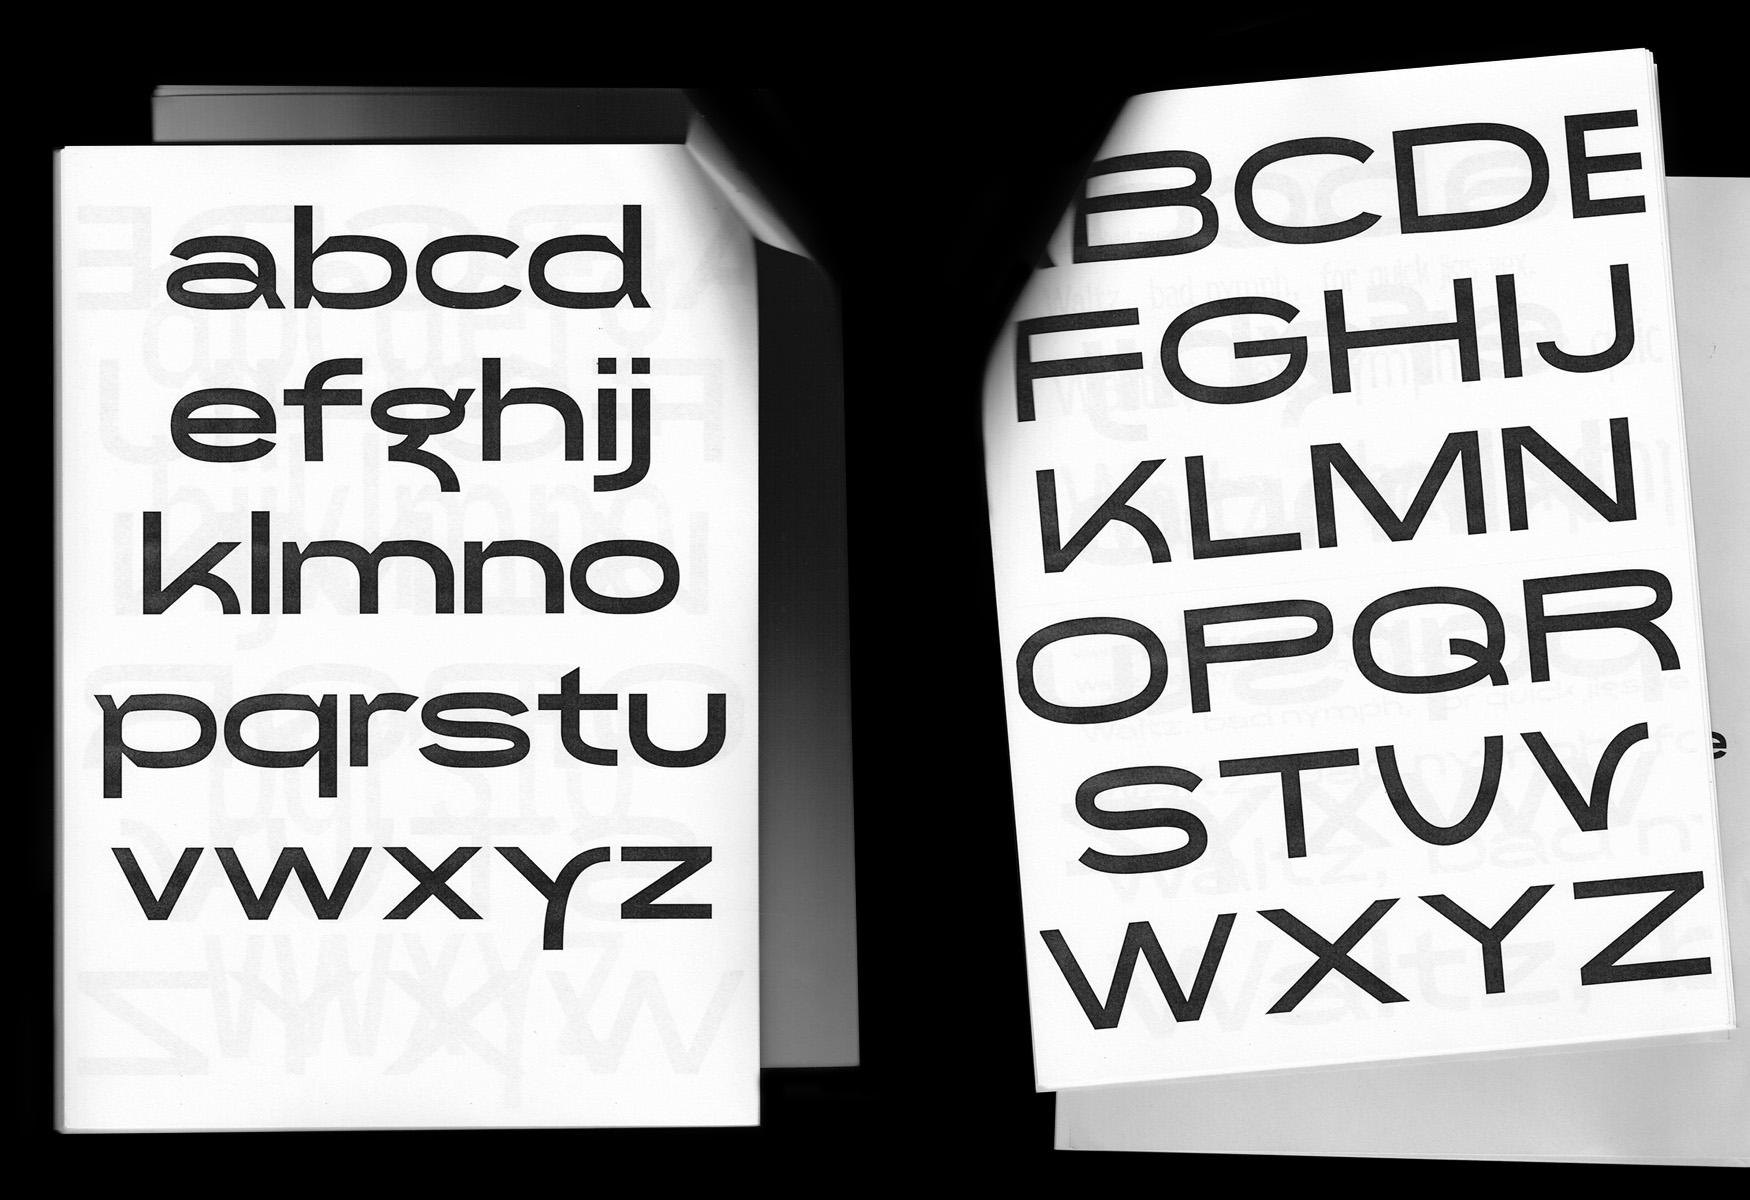 Hickman, typeface + publication